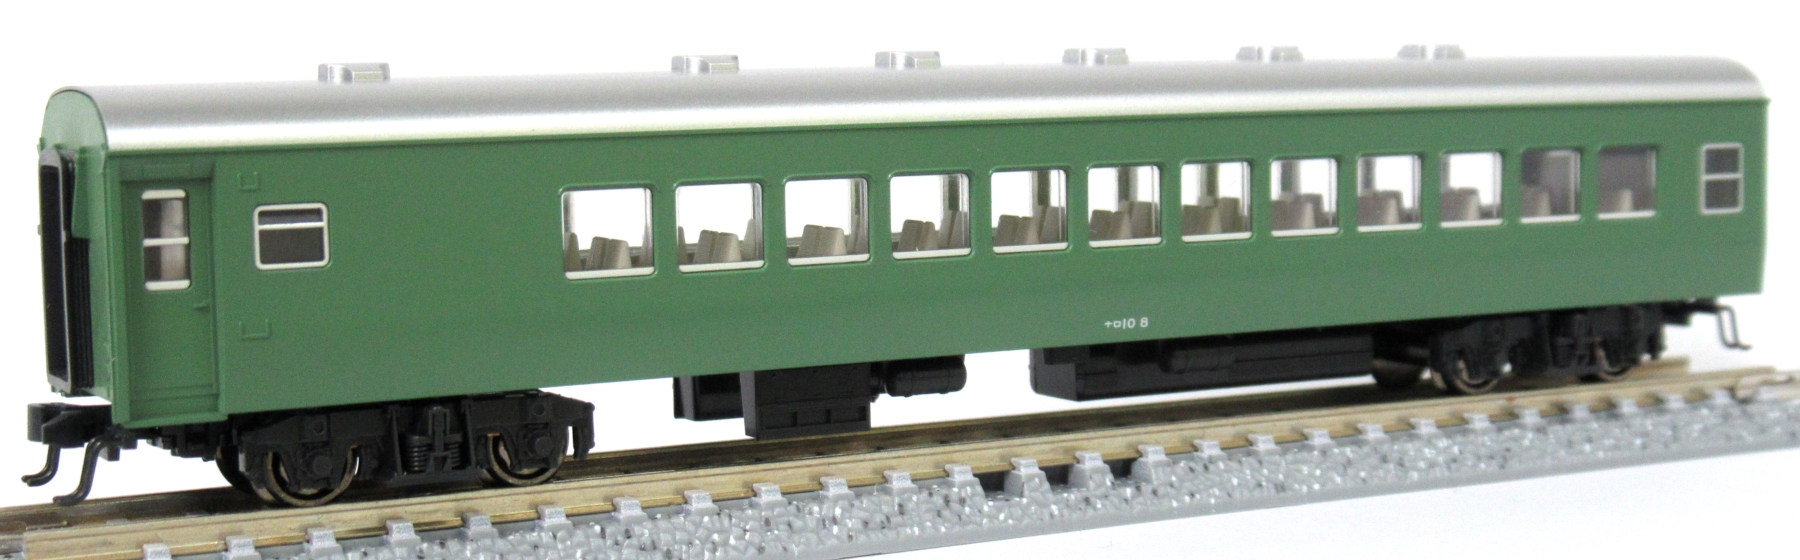 公式]鉄道模型(10-428セットバラナロ10-8 (特急つばめ「青大将」基本 